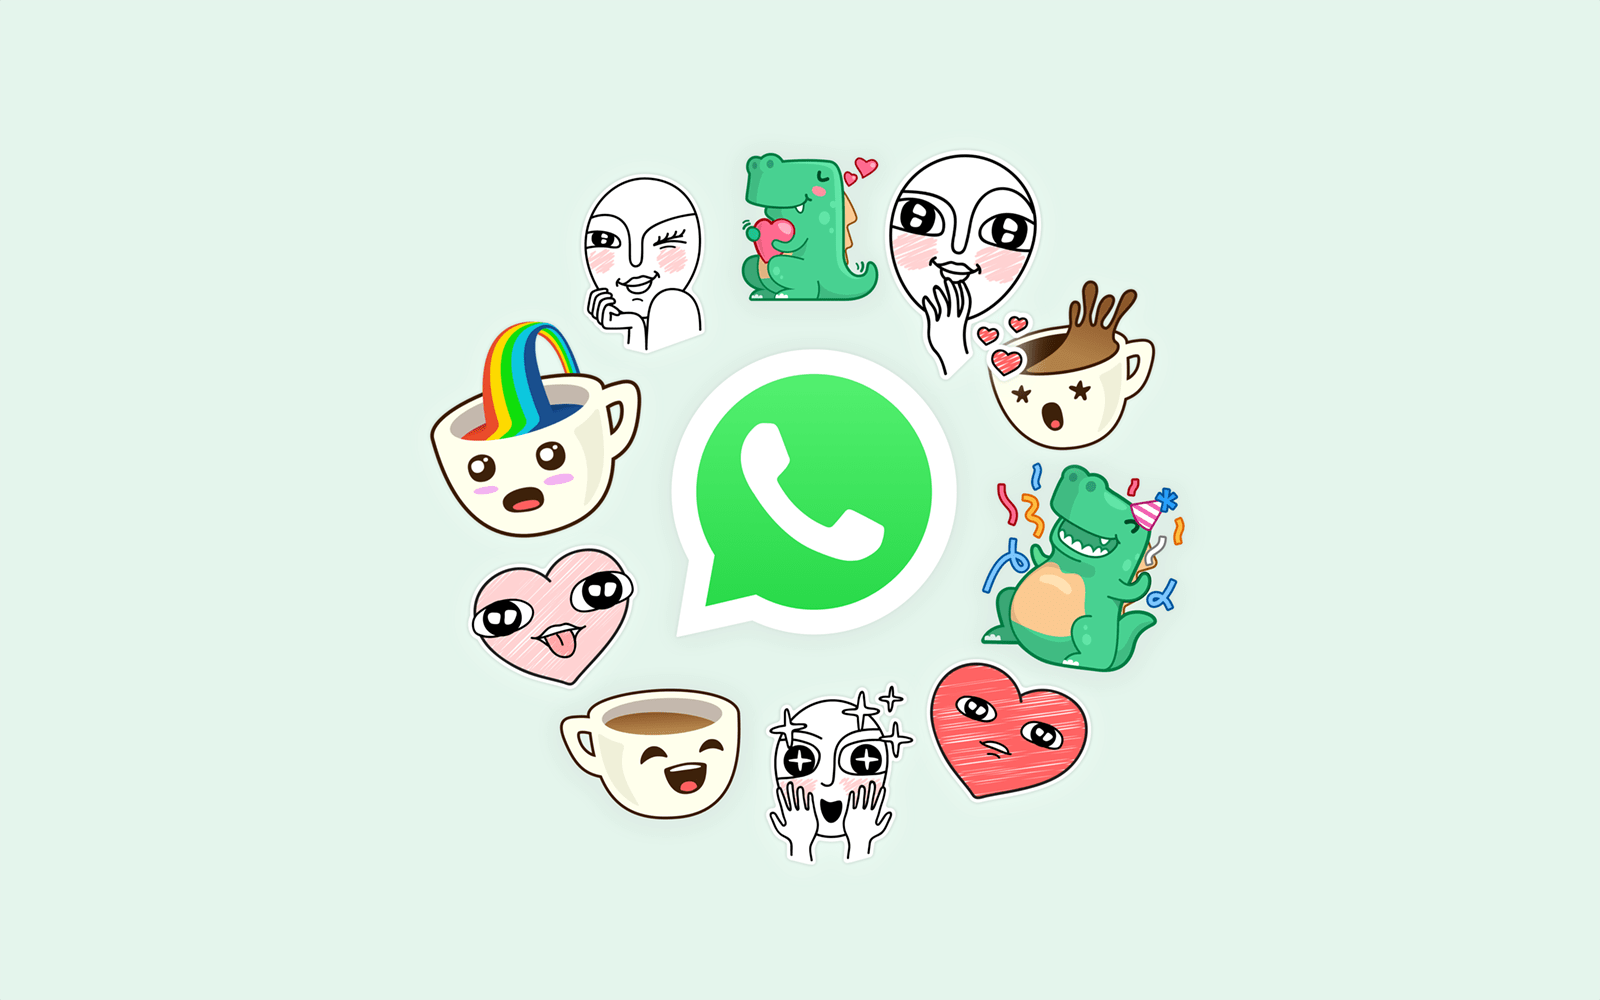 Hãy tạo cho mình một nhãn dán WhatsApp độc đáo với hình ảnh và thông điệp của riêng bạn. Điều đó sẽ khiến cuộc trò chuyện của bạn với bạn bè trở nên thú vị, đầy màu sắc.